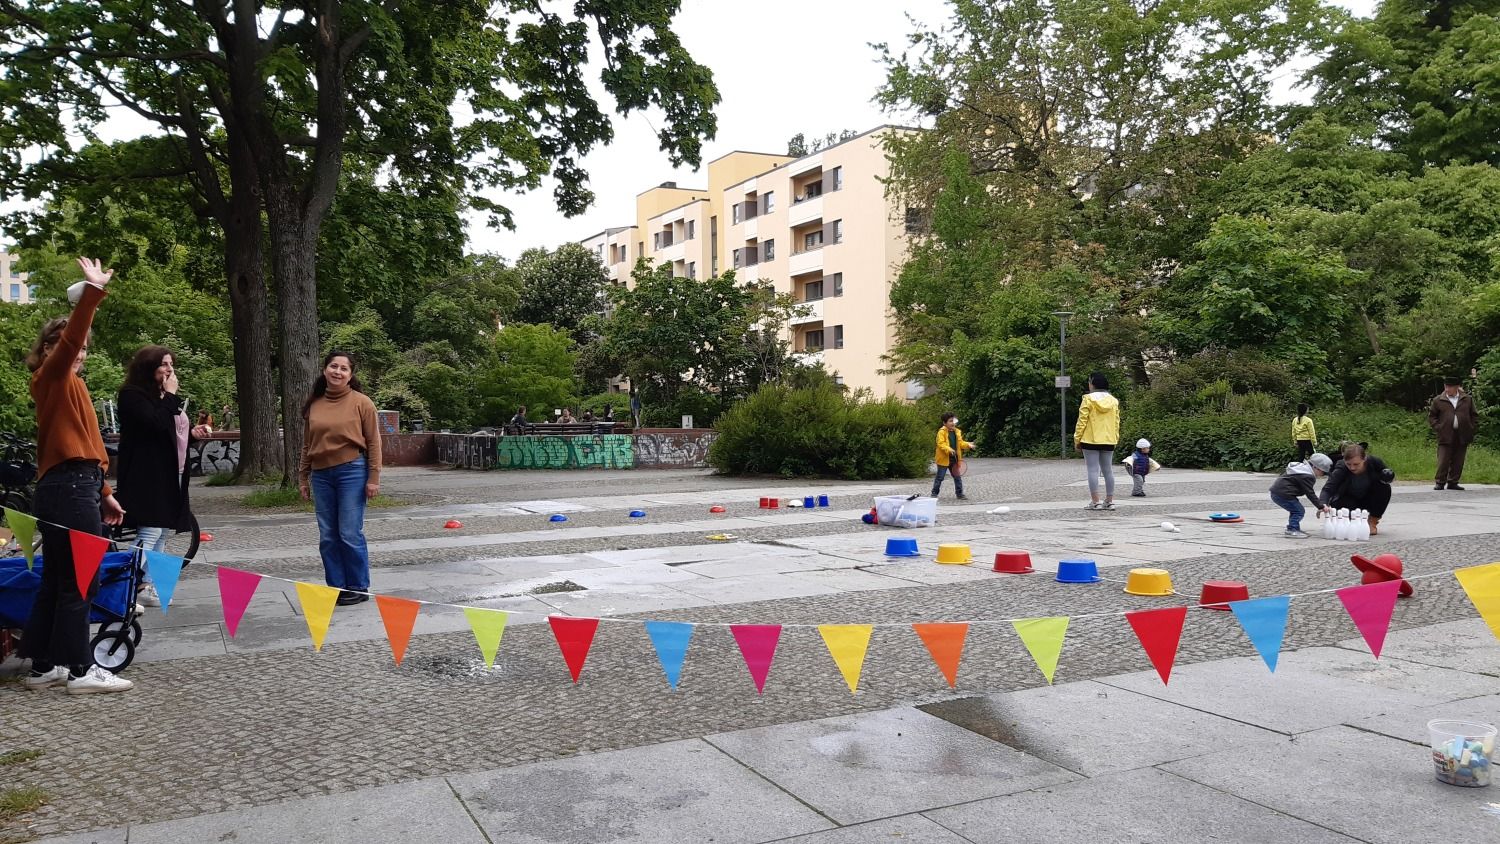 spielende Kinder auf einem Bewegungsparkour am Vinetaplatz und sich unterhaltende Erwachsene